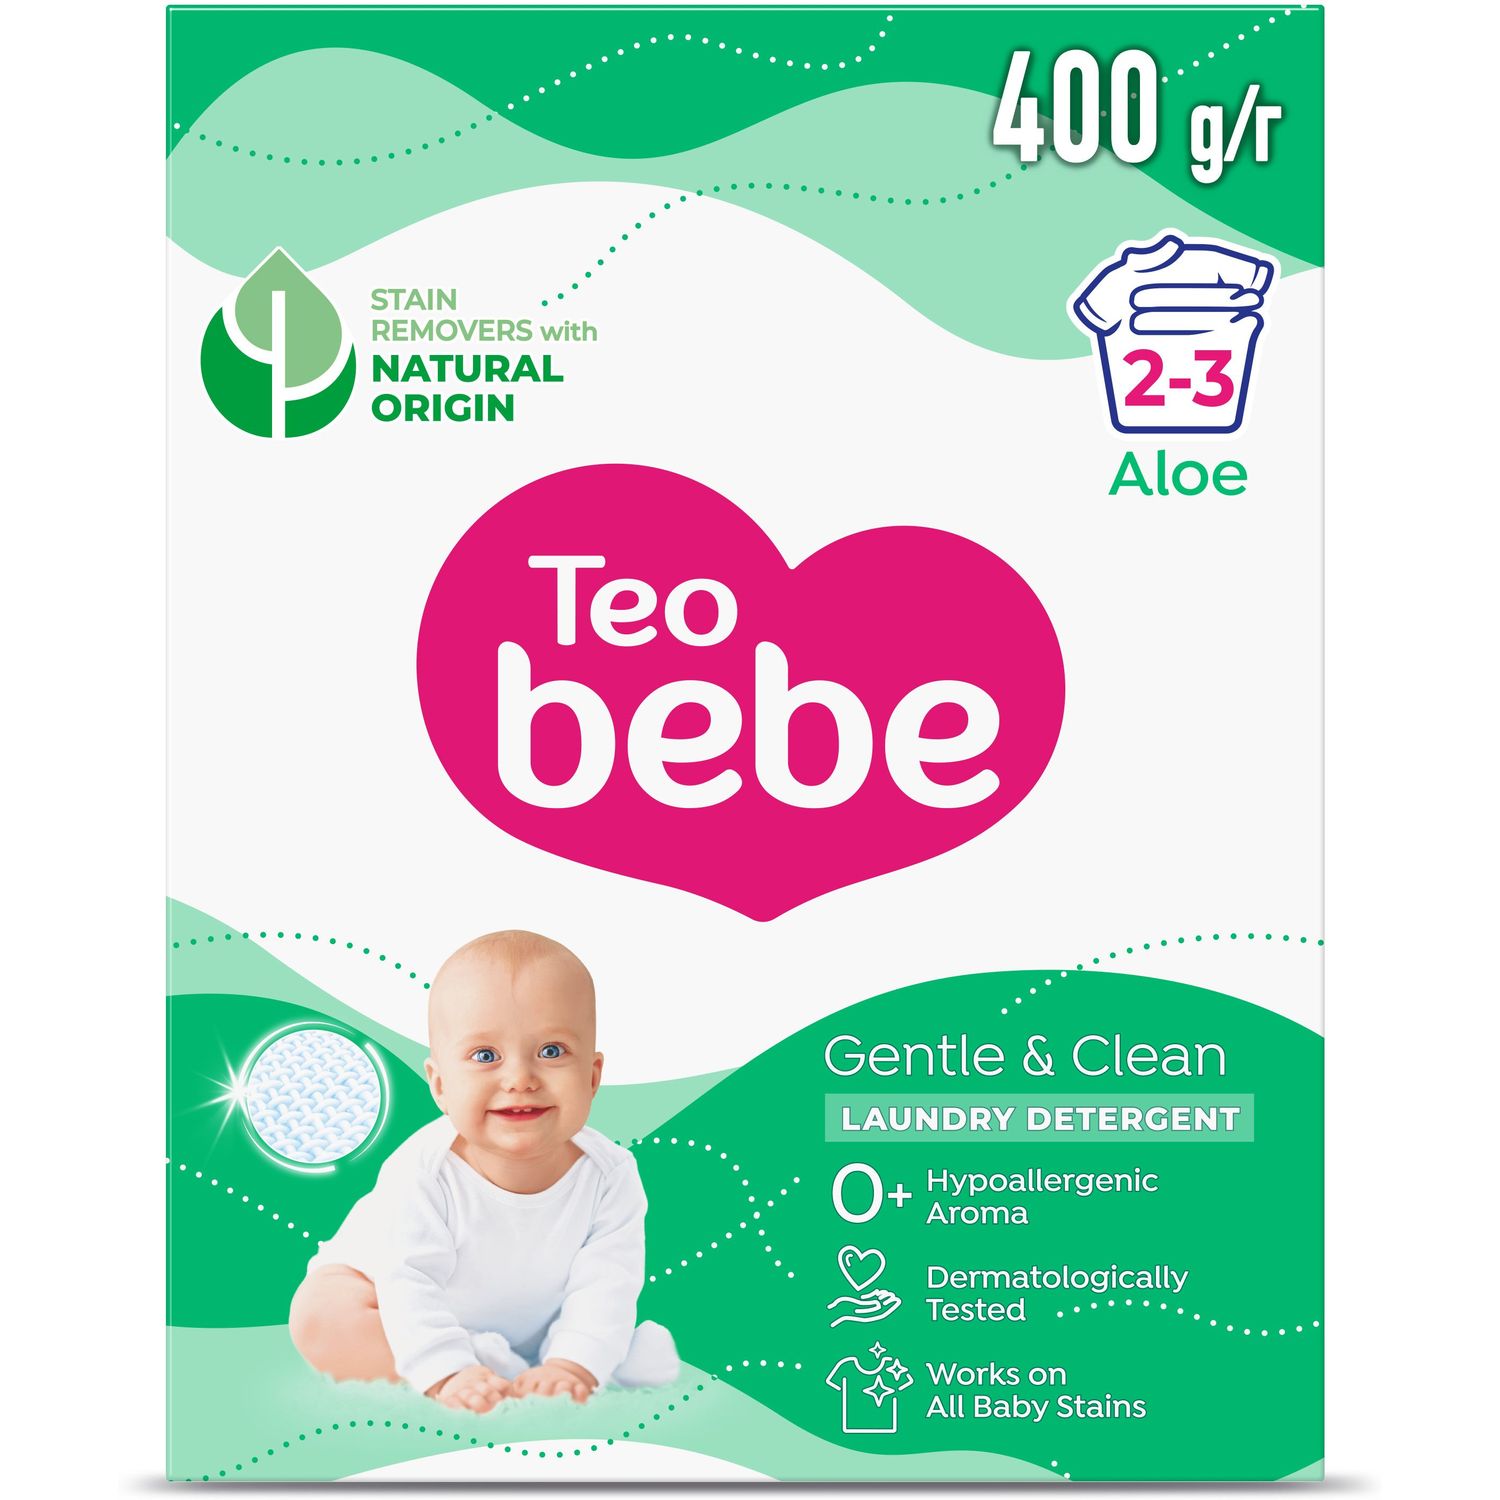 Фото - Засіб гігієни Дитячий пральний порошок Teo Bebe Just Essentials Cotton Soft Green, 400 г